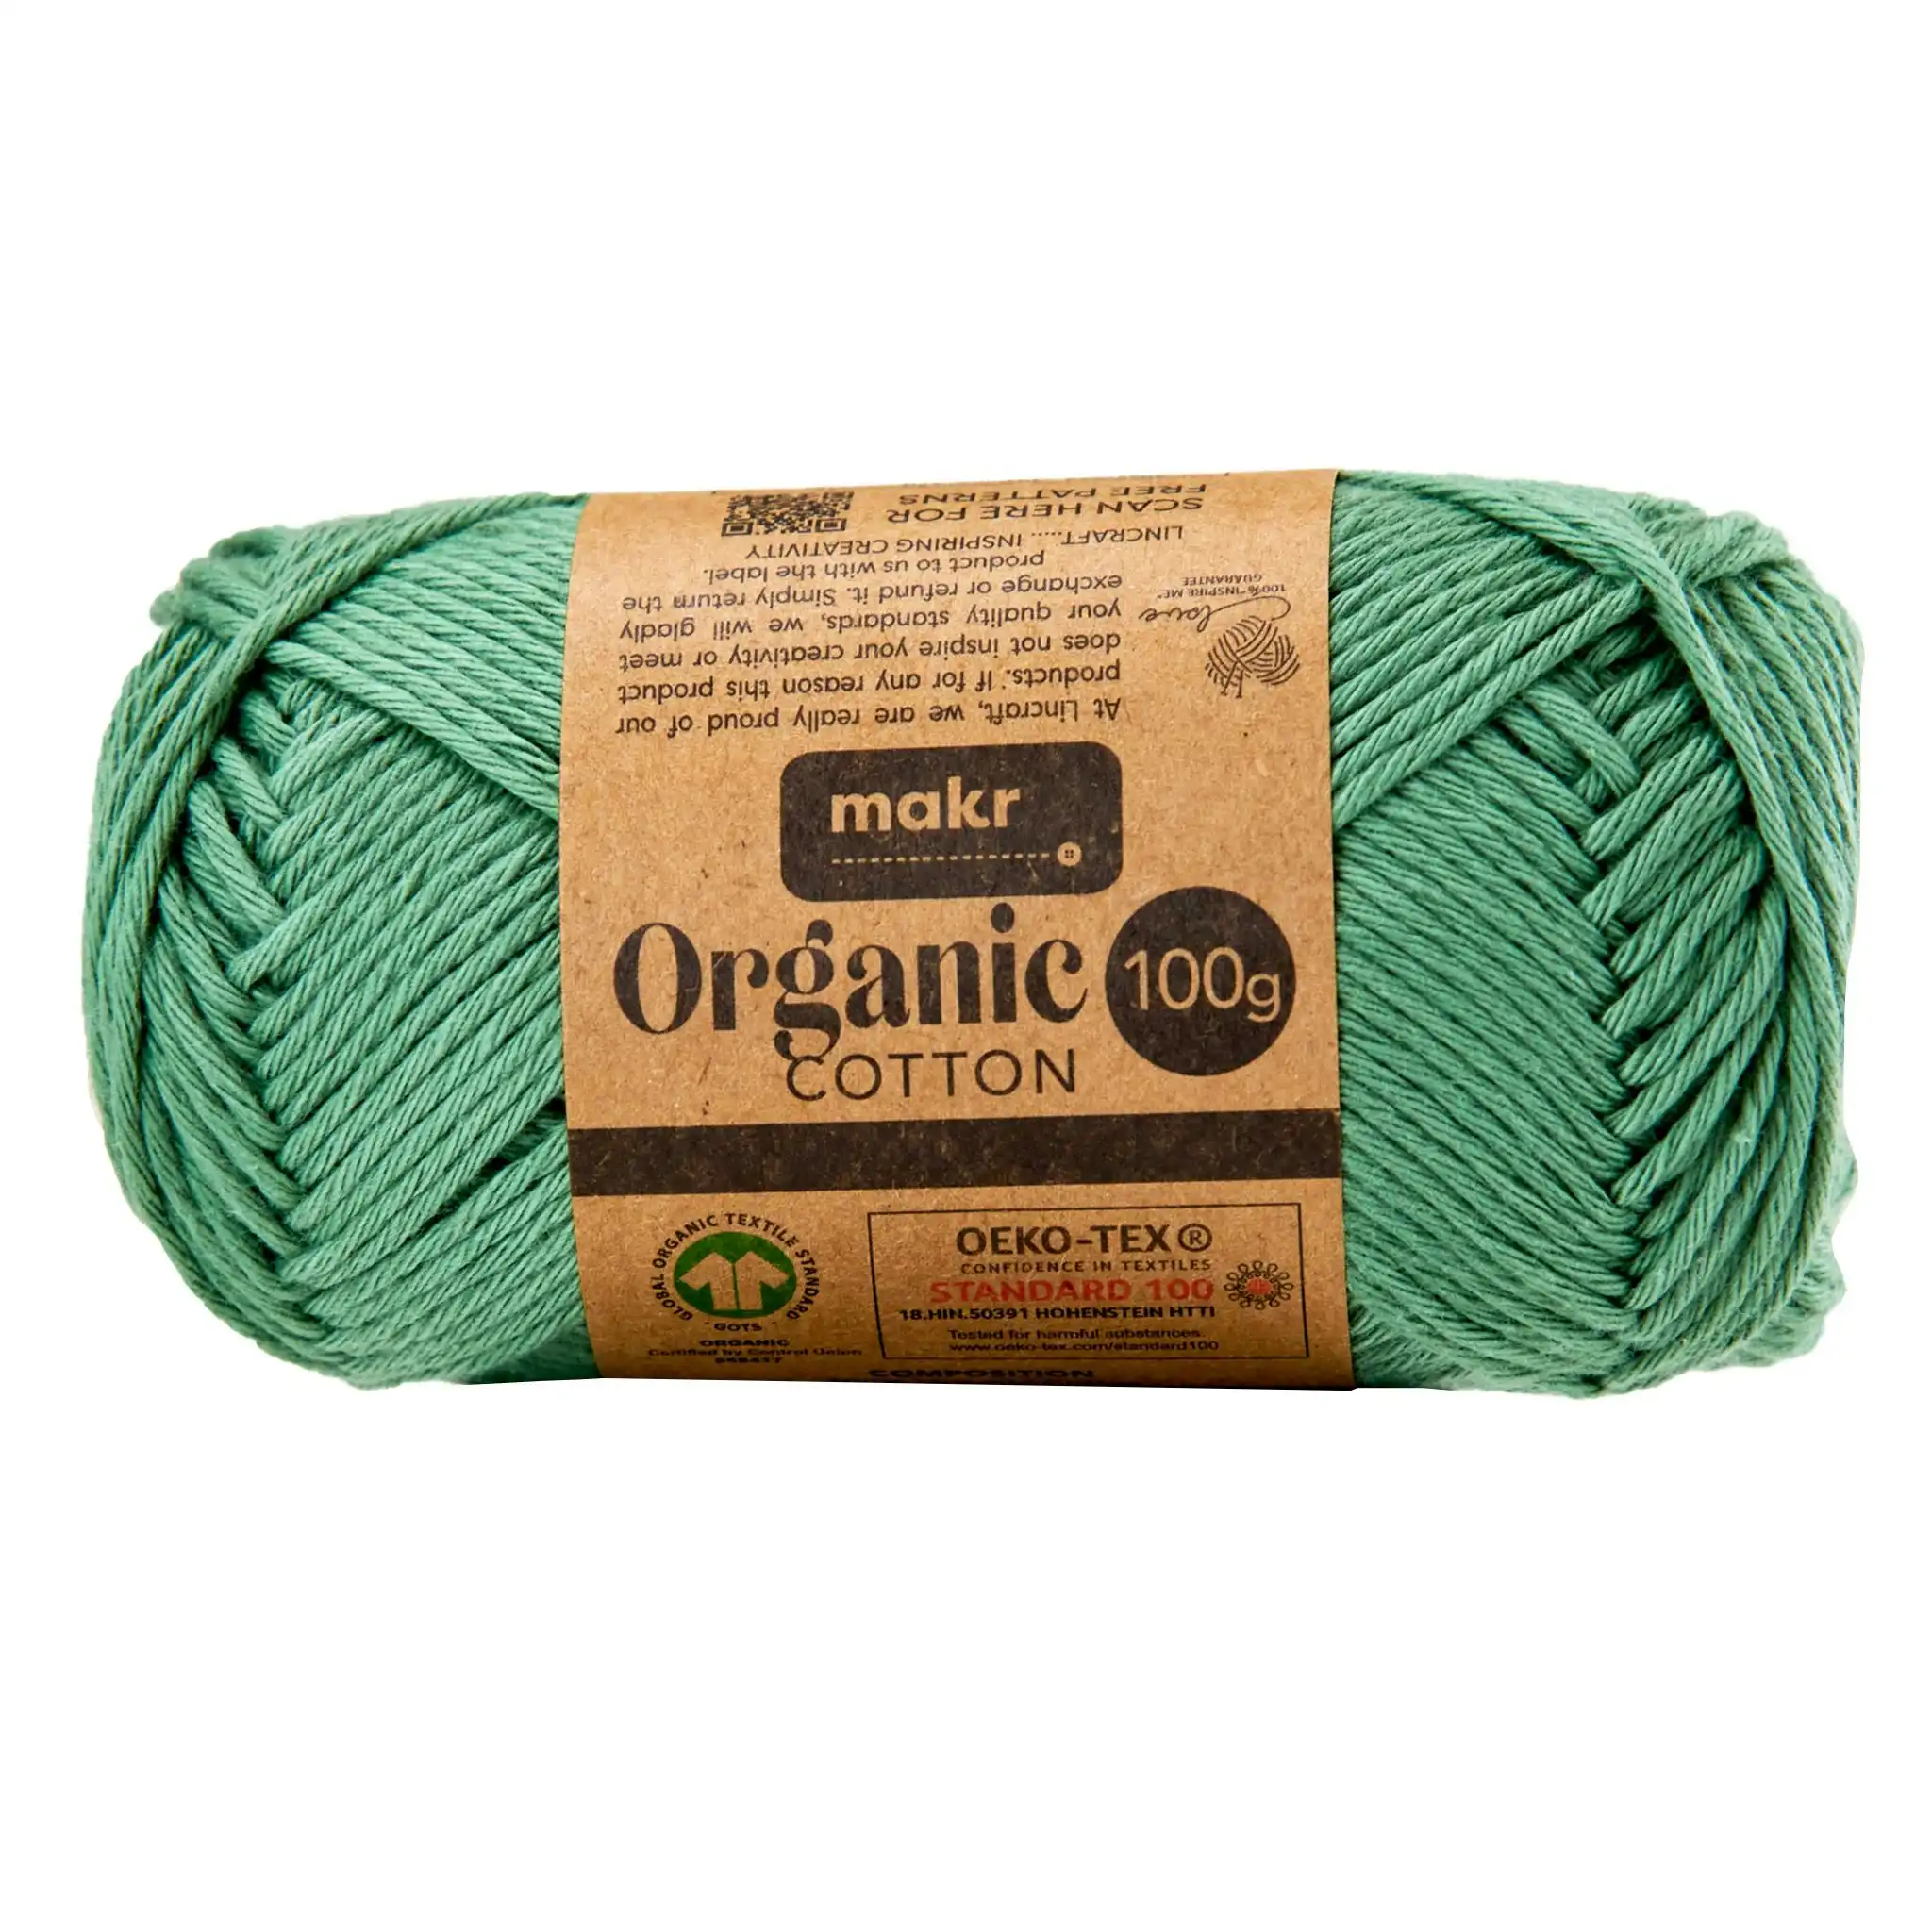 Makr Organic Cotton Crochet & Knitting Yarn, Hedge Green- 100g Cotton Yarn